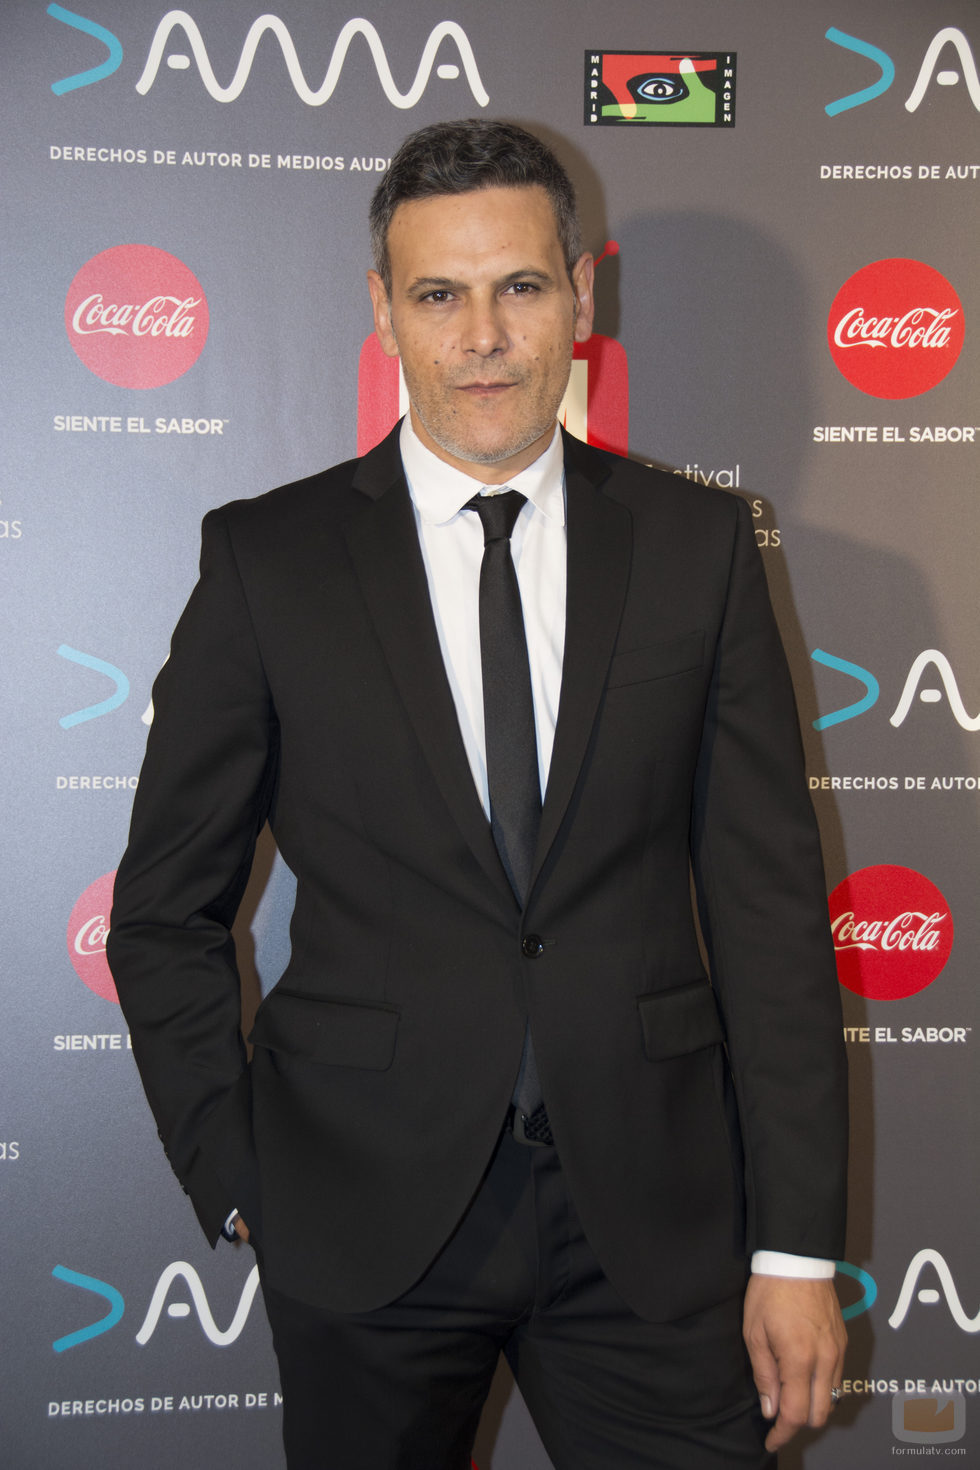 Roberto Enríquez, actor de 'Vis a Vis' en los Premios MiM 2016